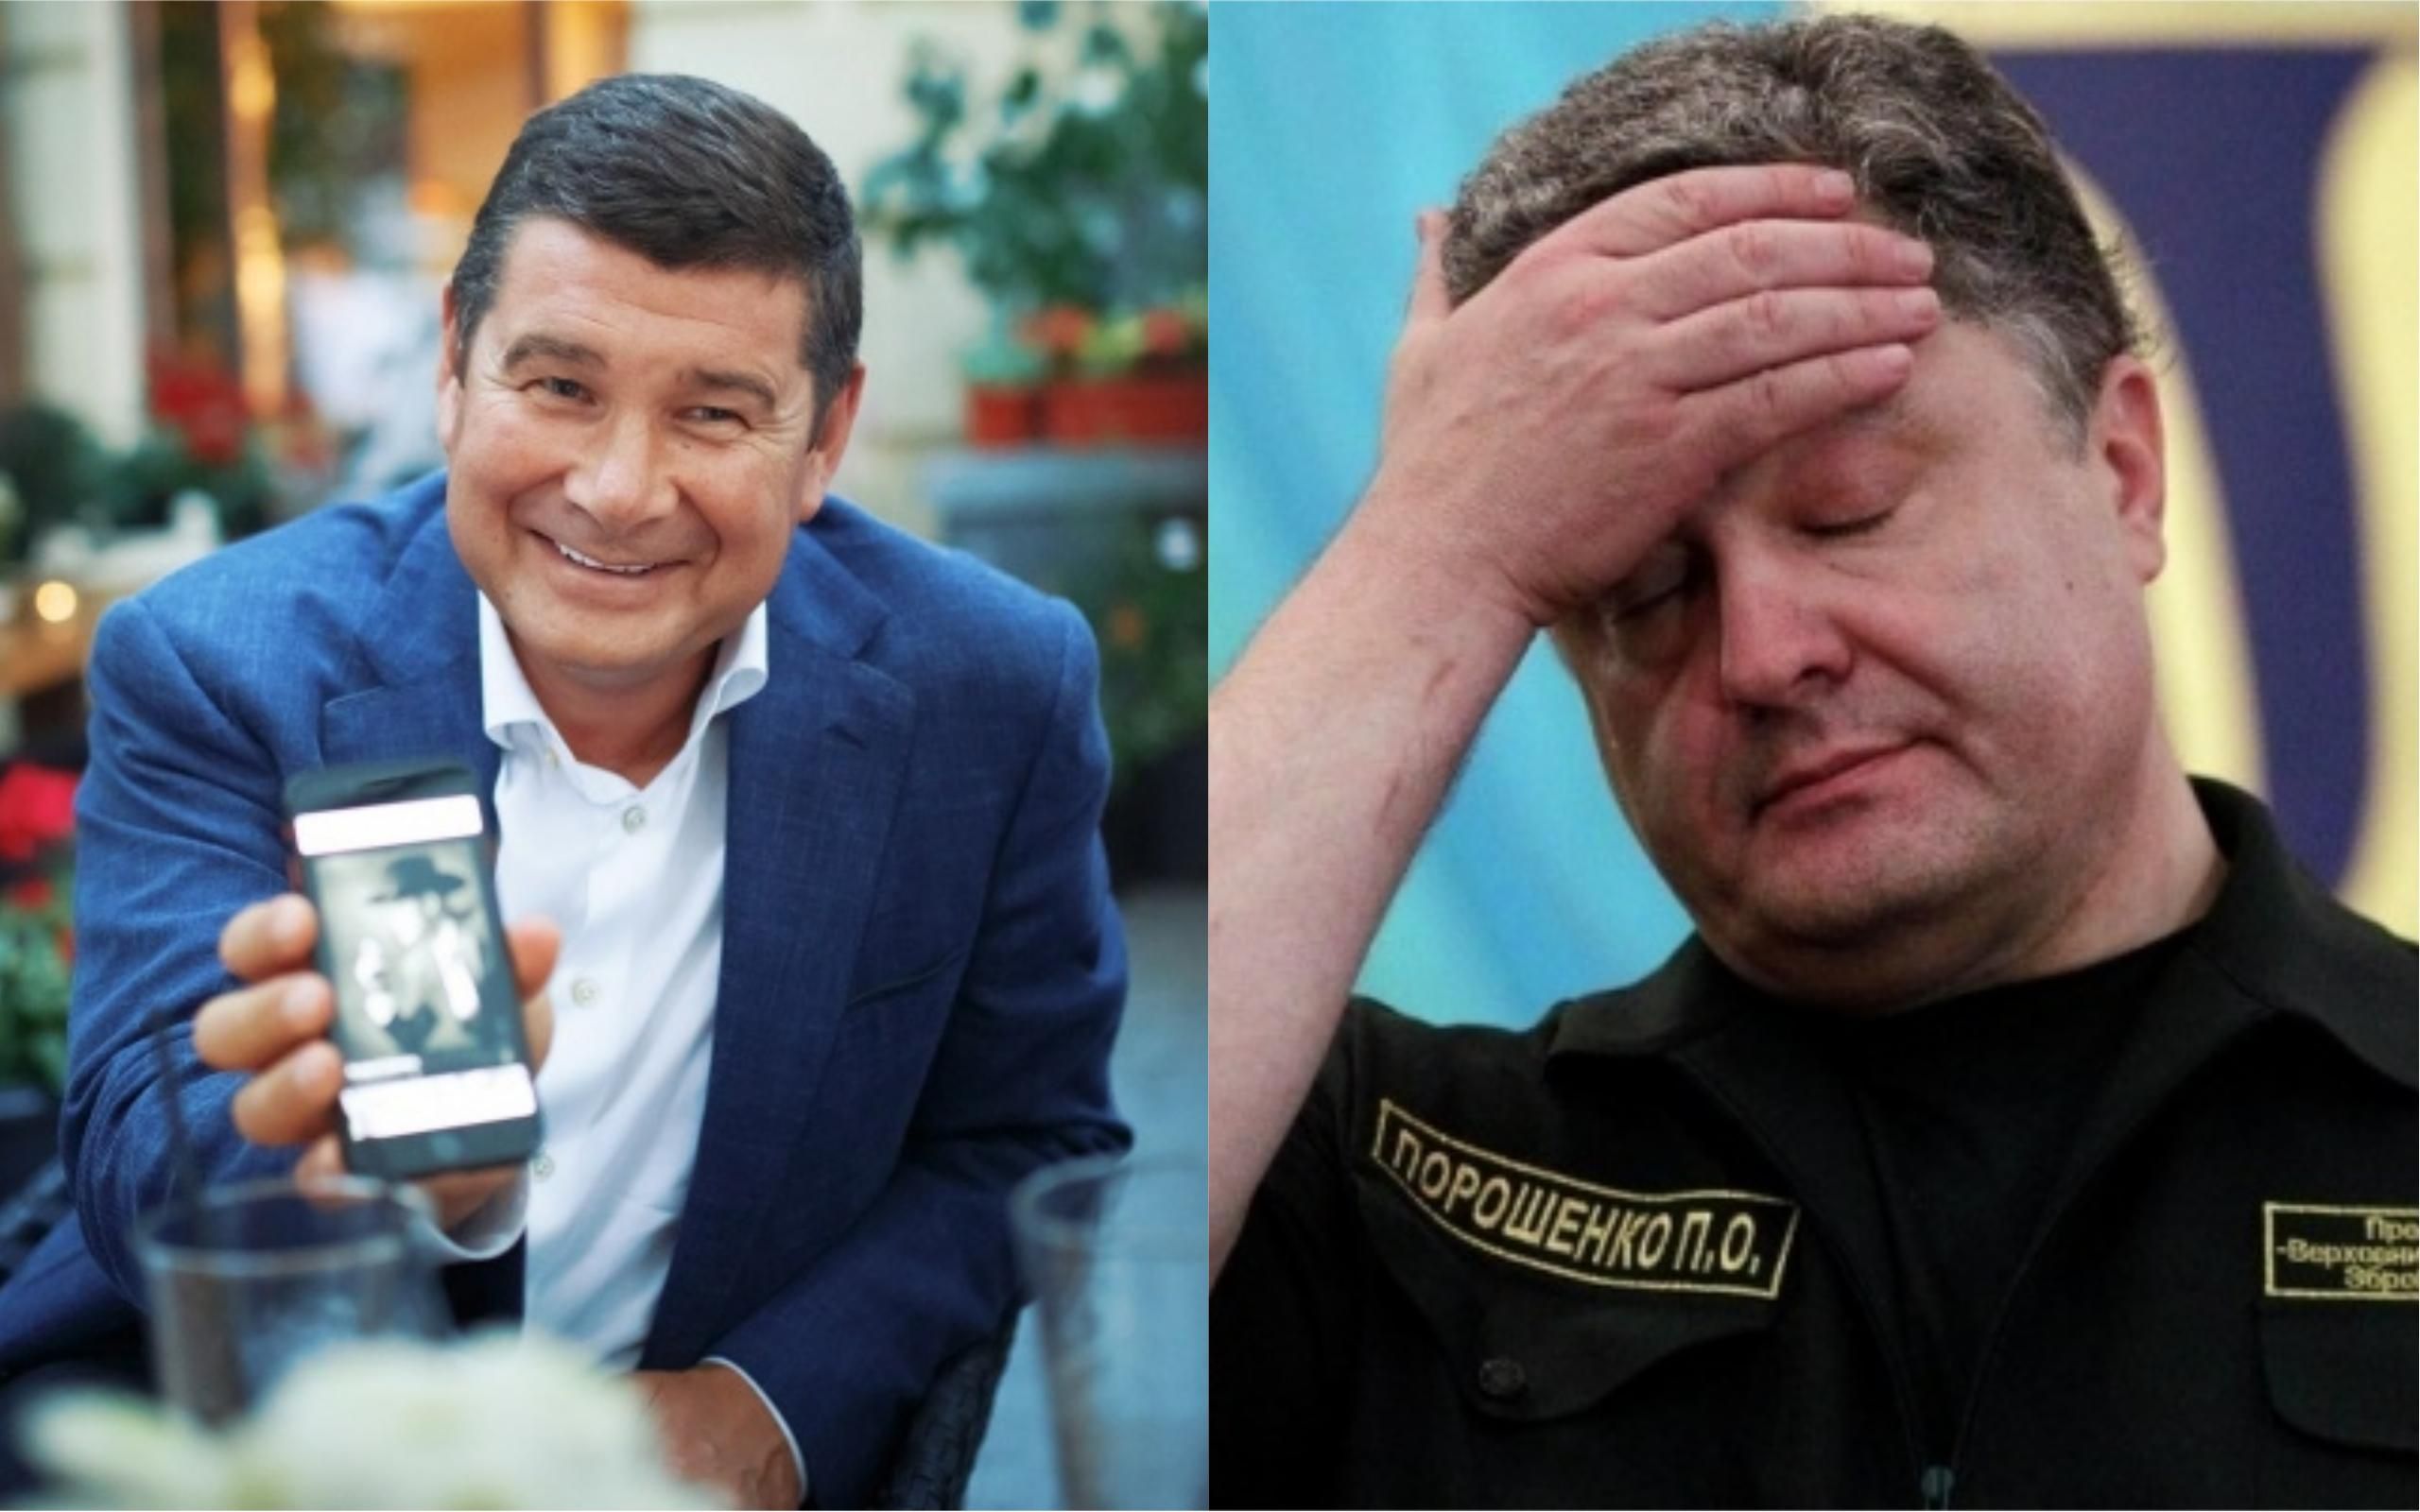 Пленки Онищенко с участием Порошенко: СМИ опубликовали первую запись с голосом президента